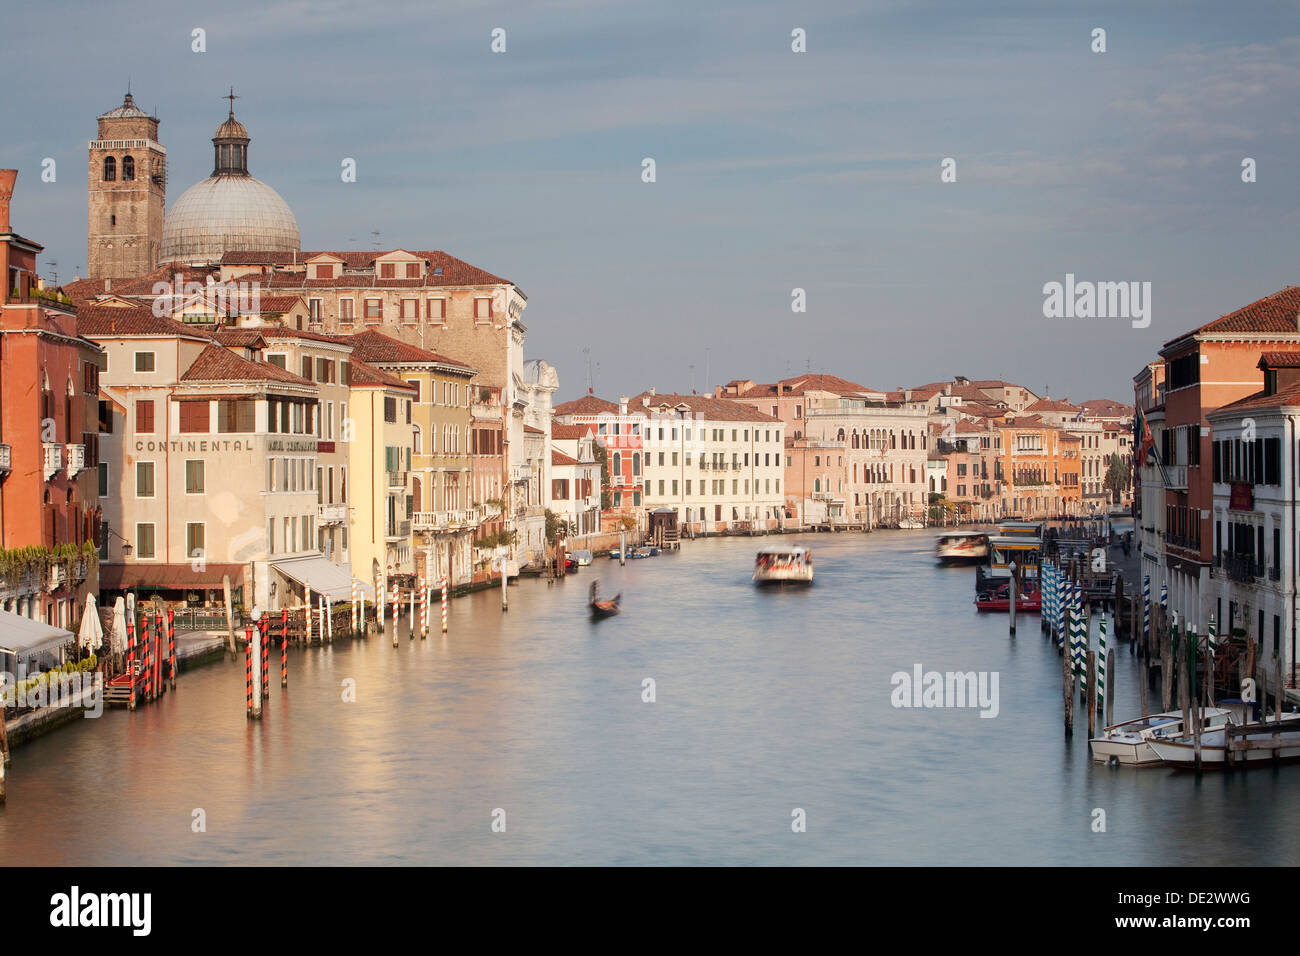 Grand canal, canal grande avec des bateaux et des palais, palais, Venise, Italie, venezien Banque D'Images